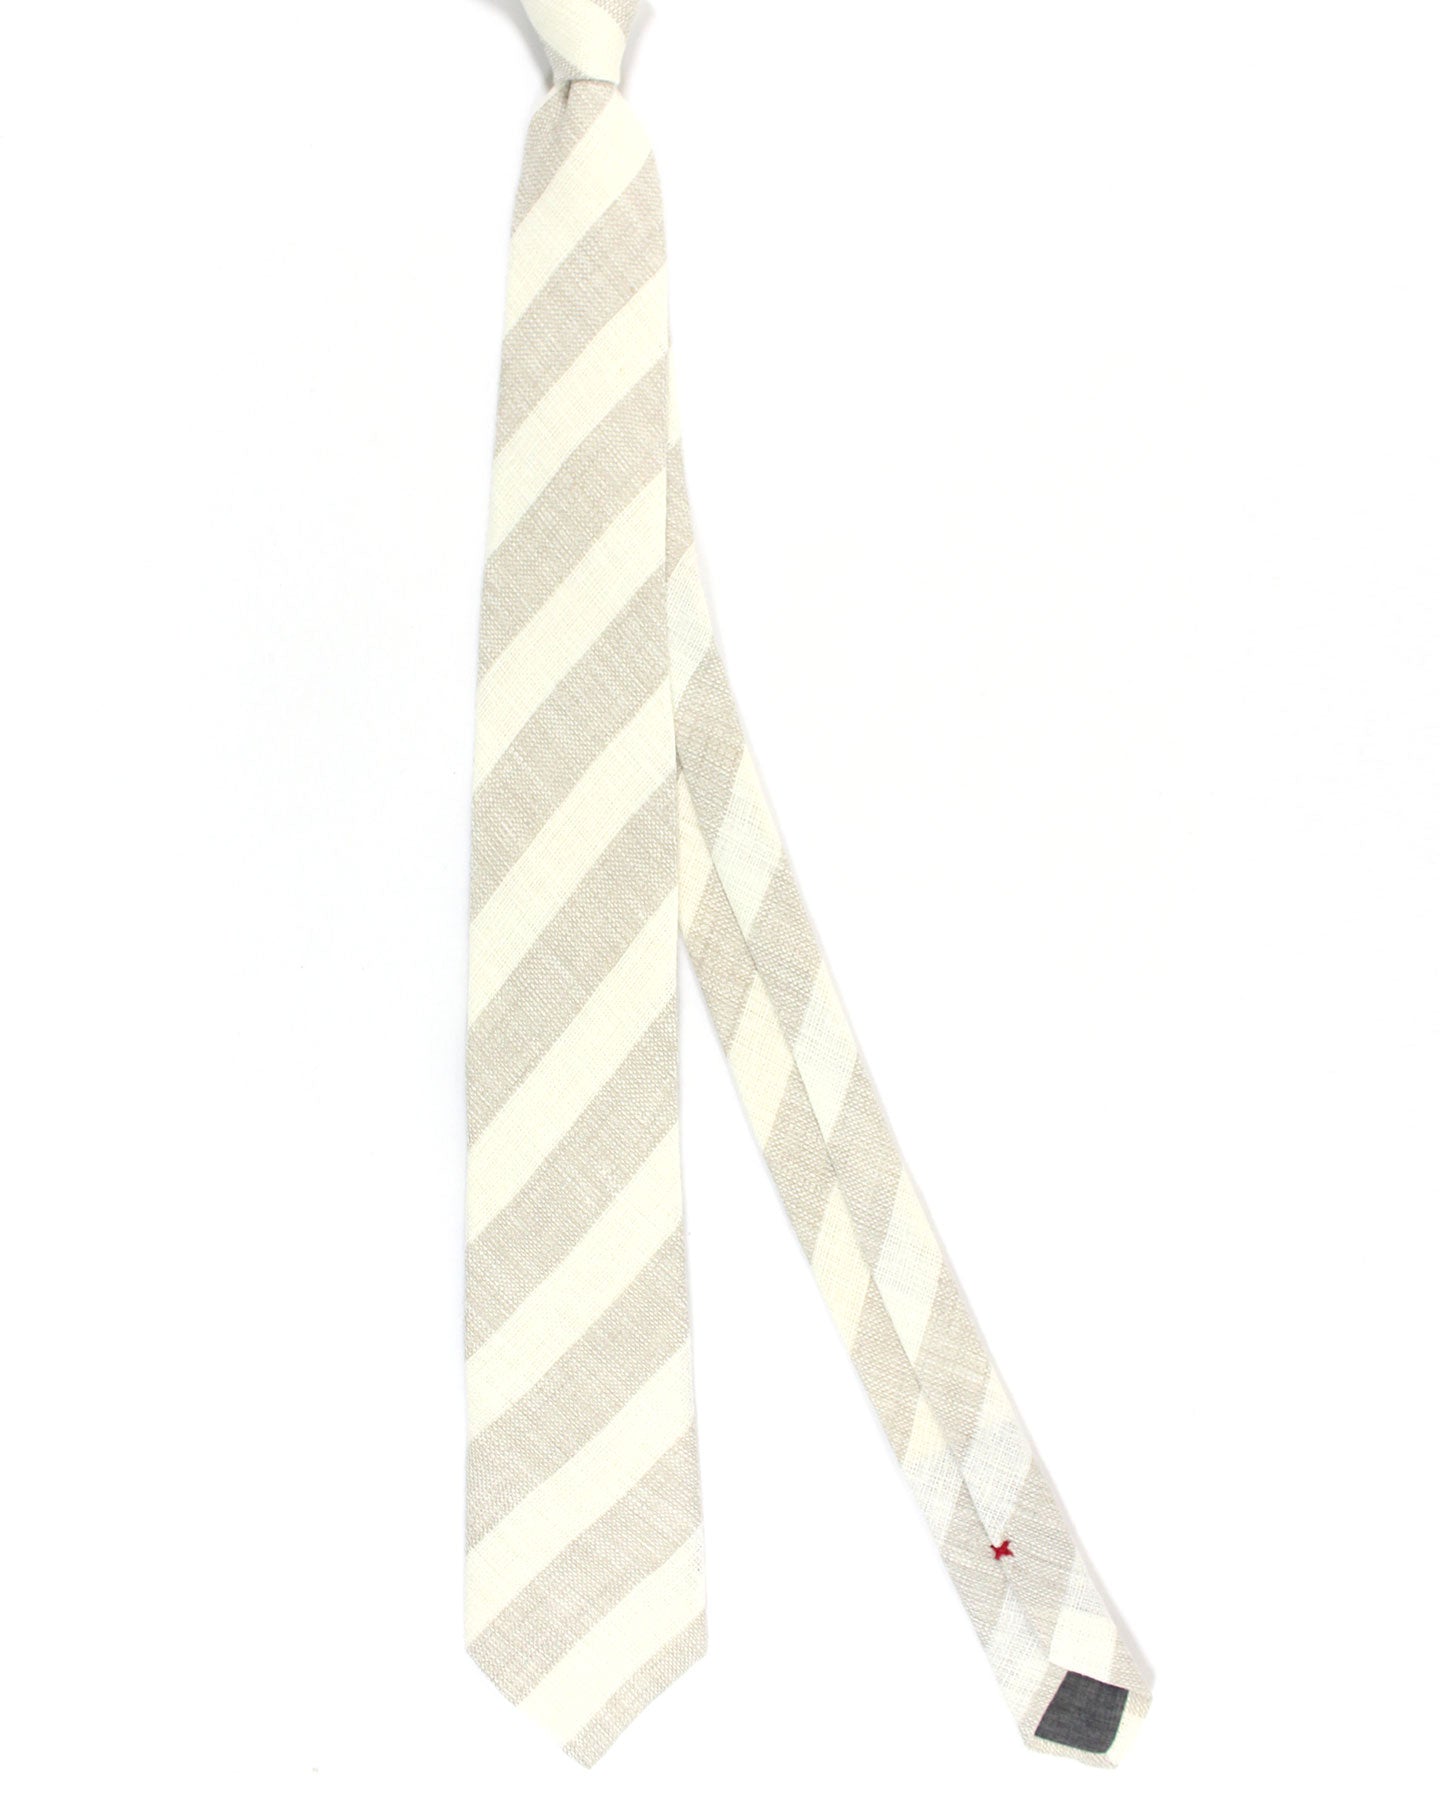 Brunello Cucinelli Tie White Taupe Gray Stripes - Linen